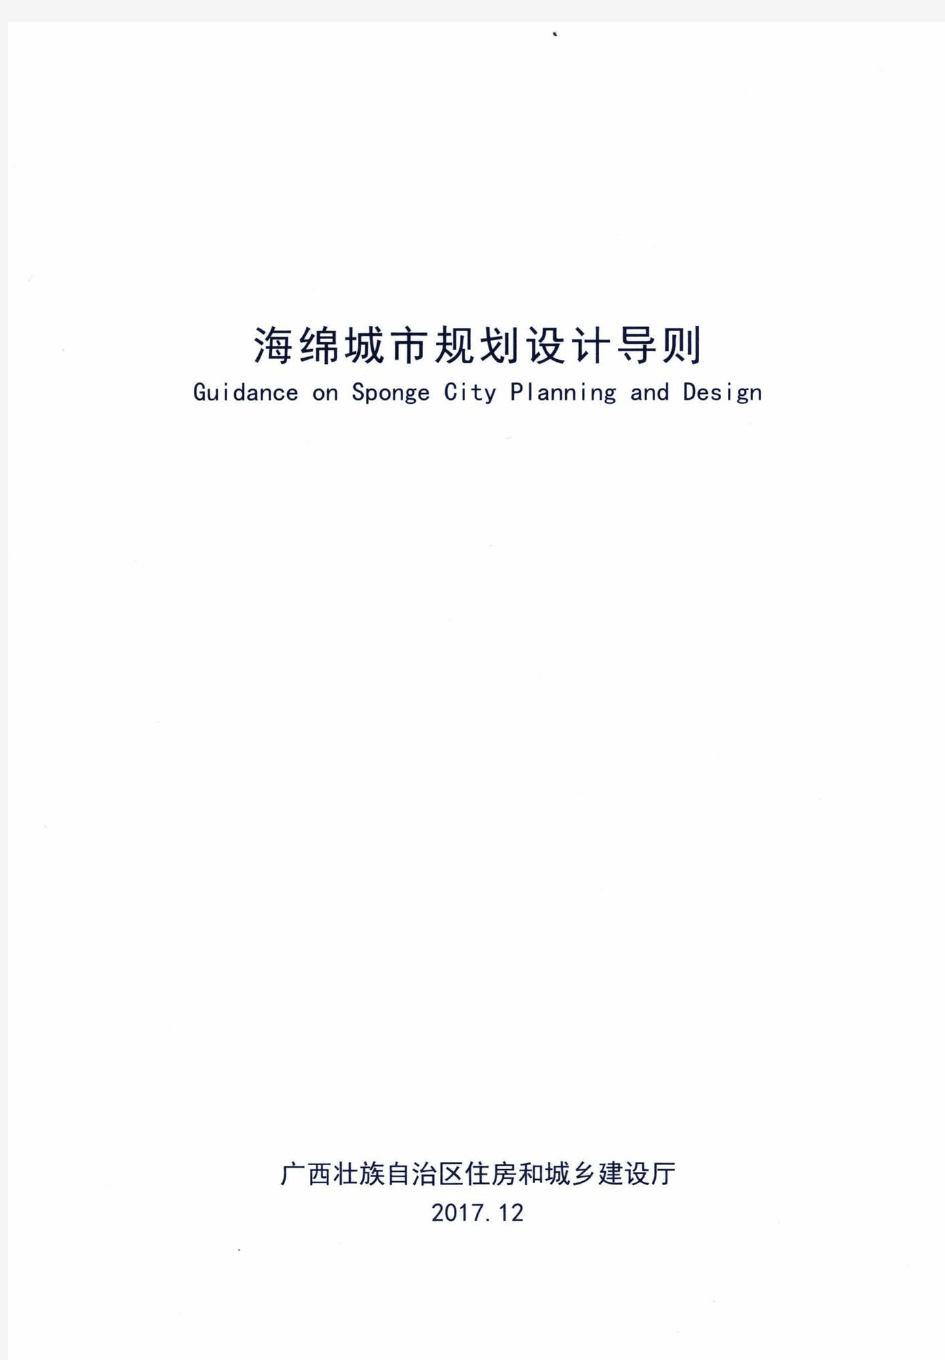 广西壮族自治区海绵城市规划设计导则(广西壮族自治区住房和城乡建设厅批准2017年12月)